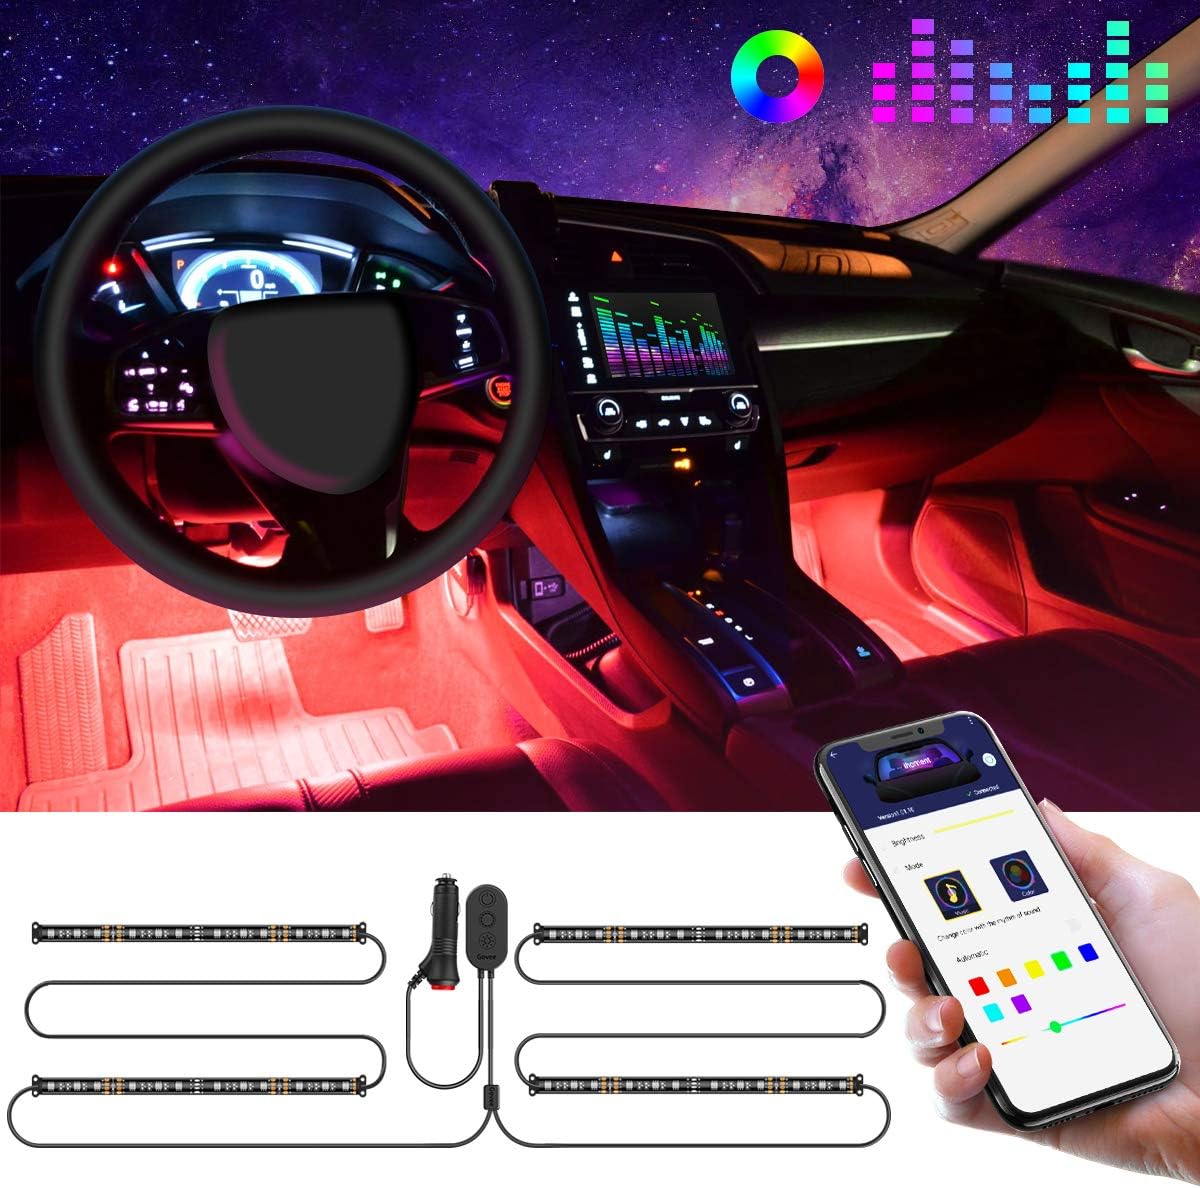 LED Innenbeleuchtung für Auto mit Musik Synchronisation als Geschenkidee